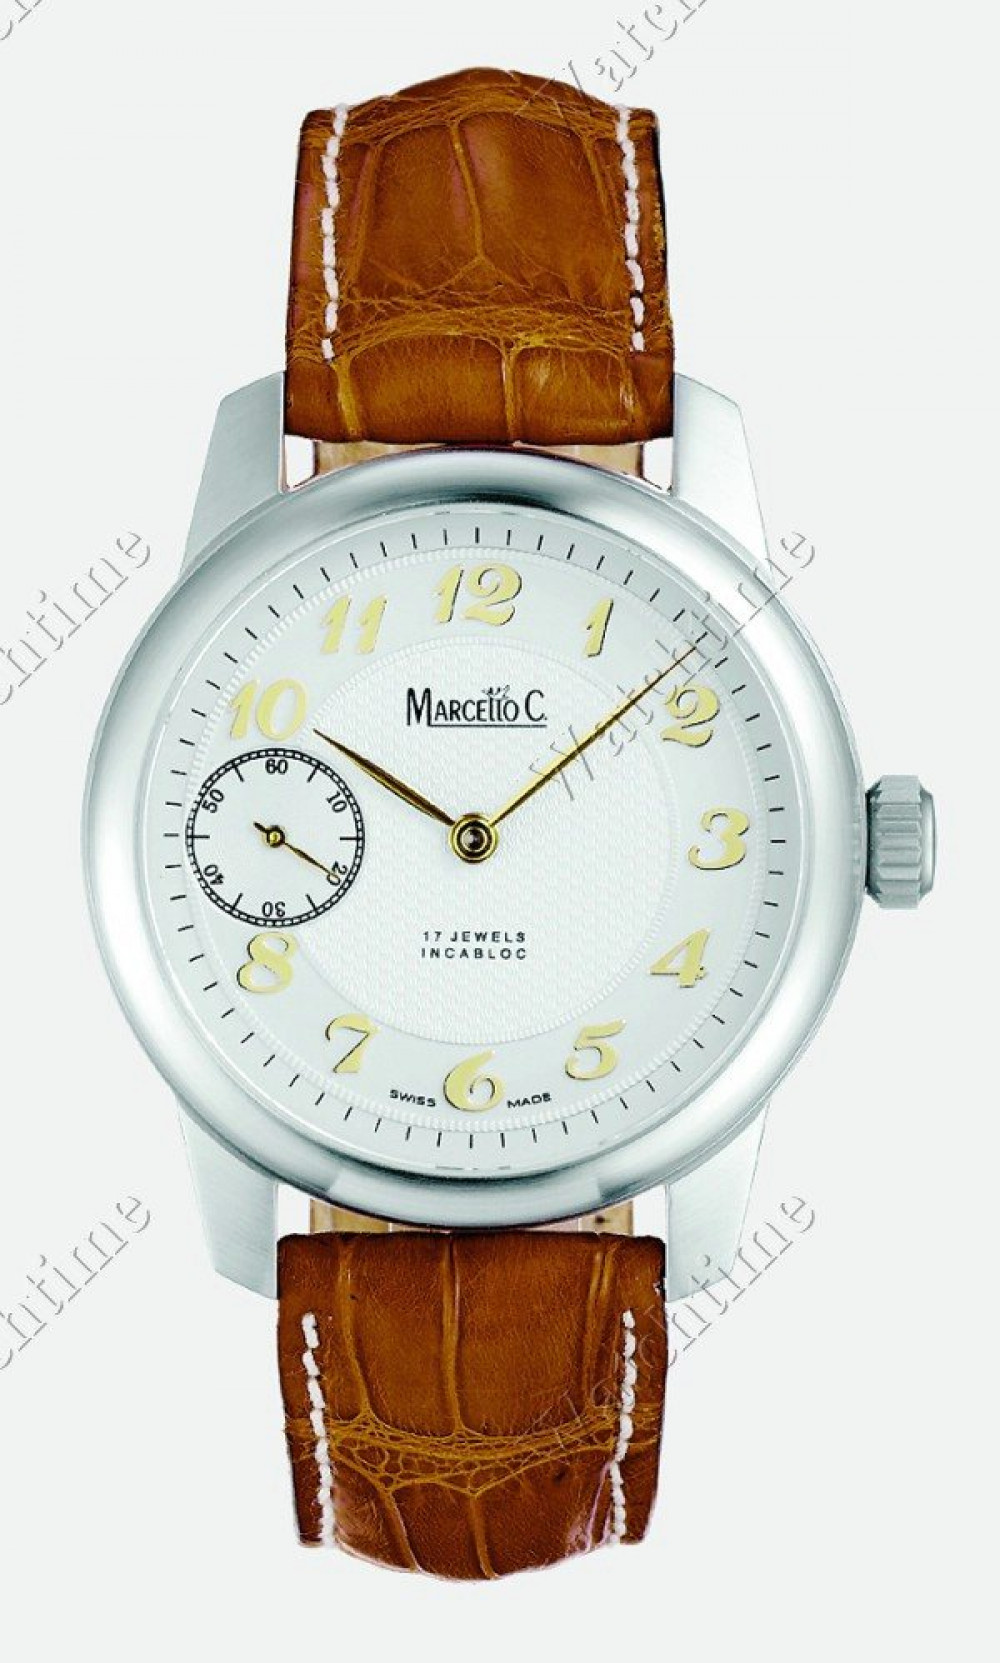 Zegarek firmy Marcello C., model 3260